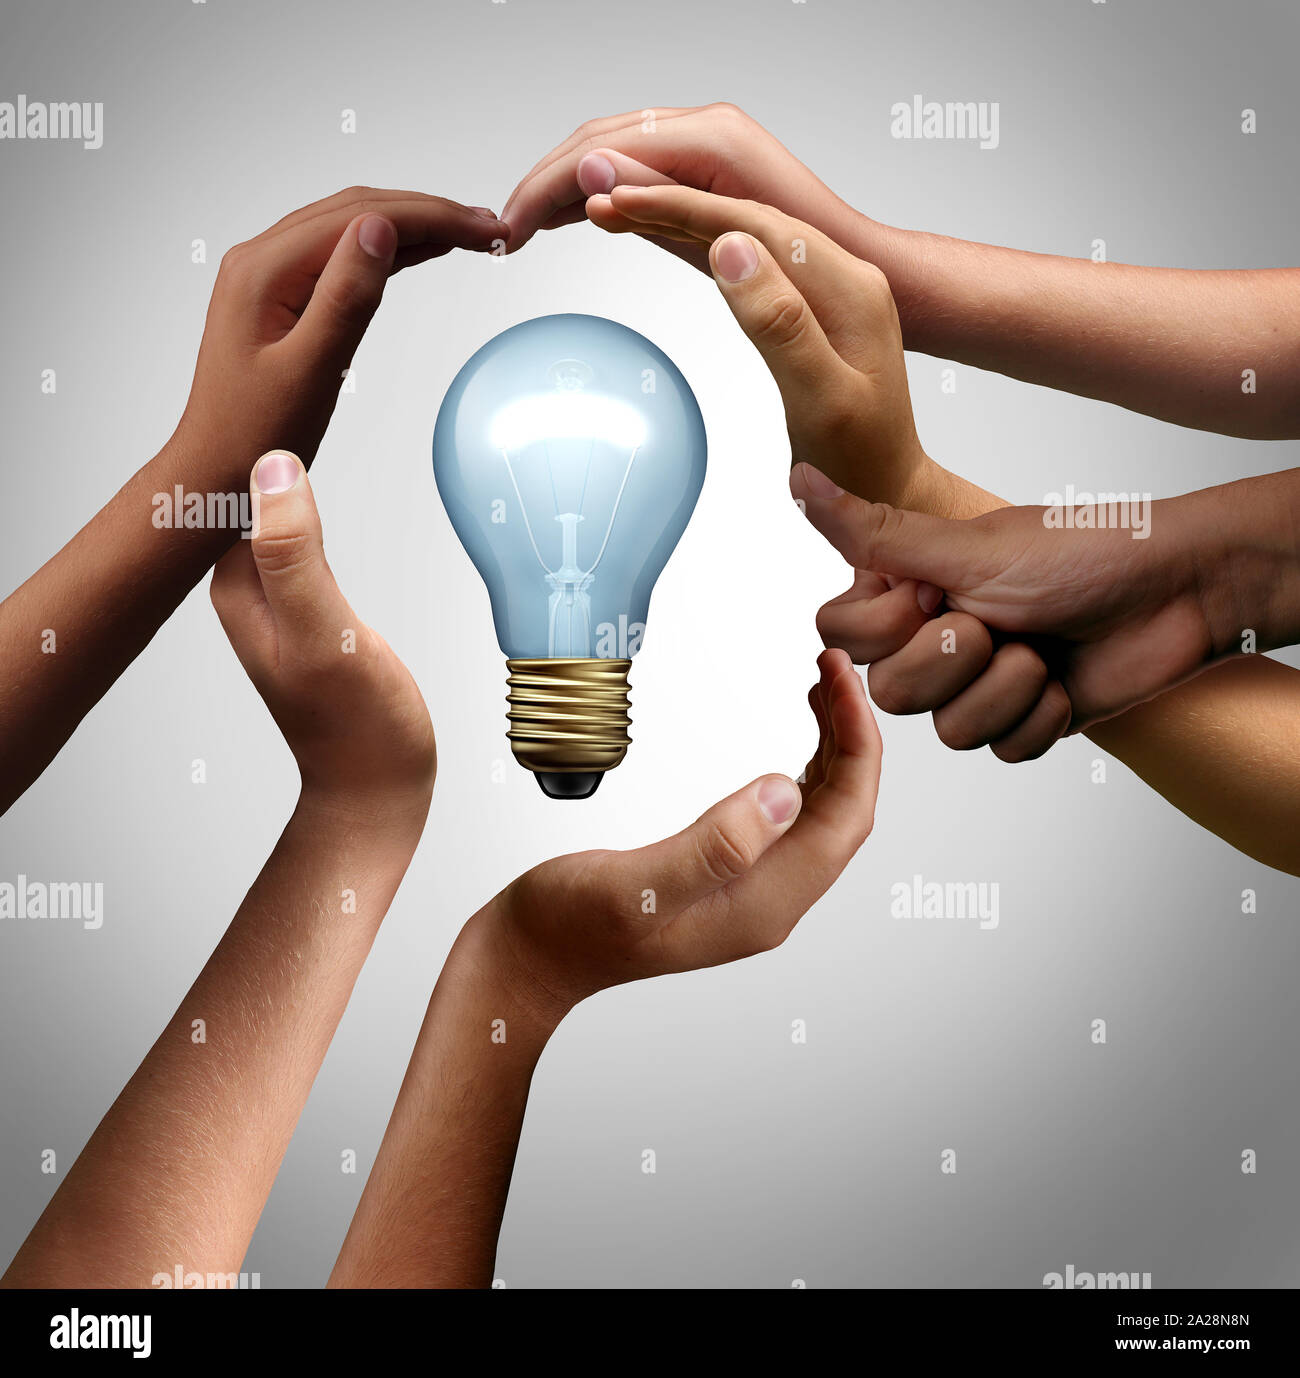 Ispirare le persone a pensare insieme come un gruppo diversificato proveniente insieme unendo le mani per collaborare nella forma di un inspirational lampadina. Foto Stock